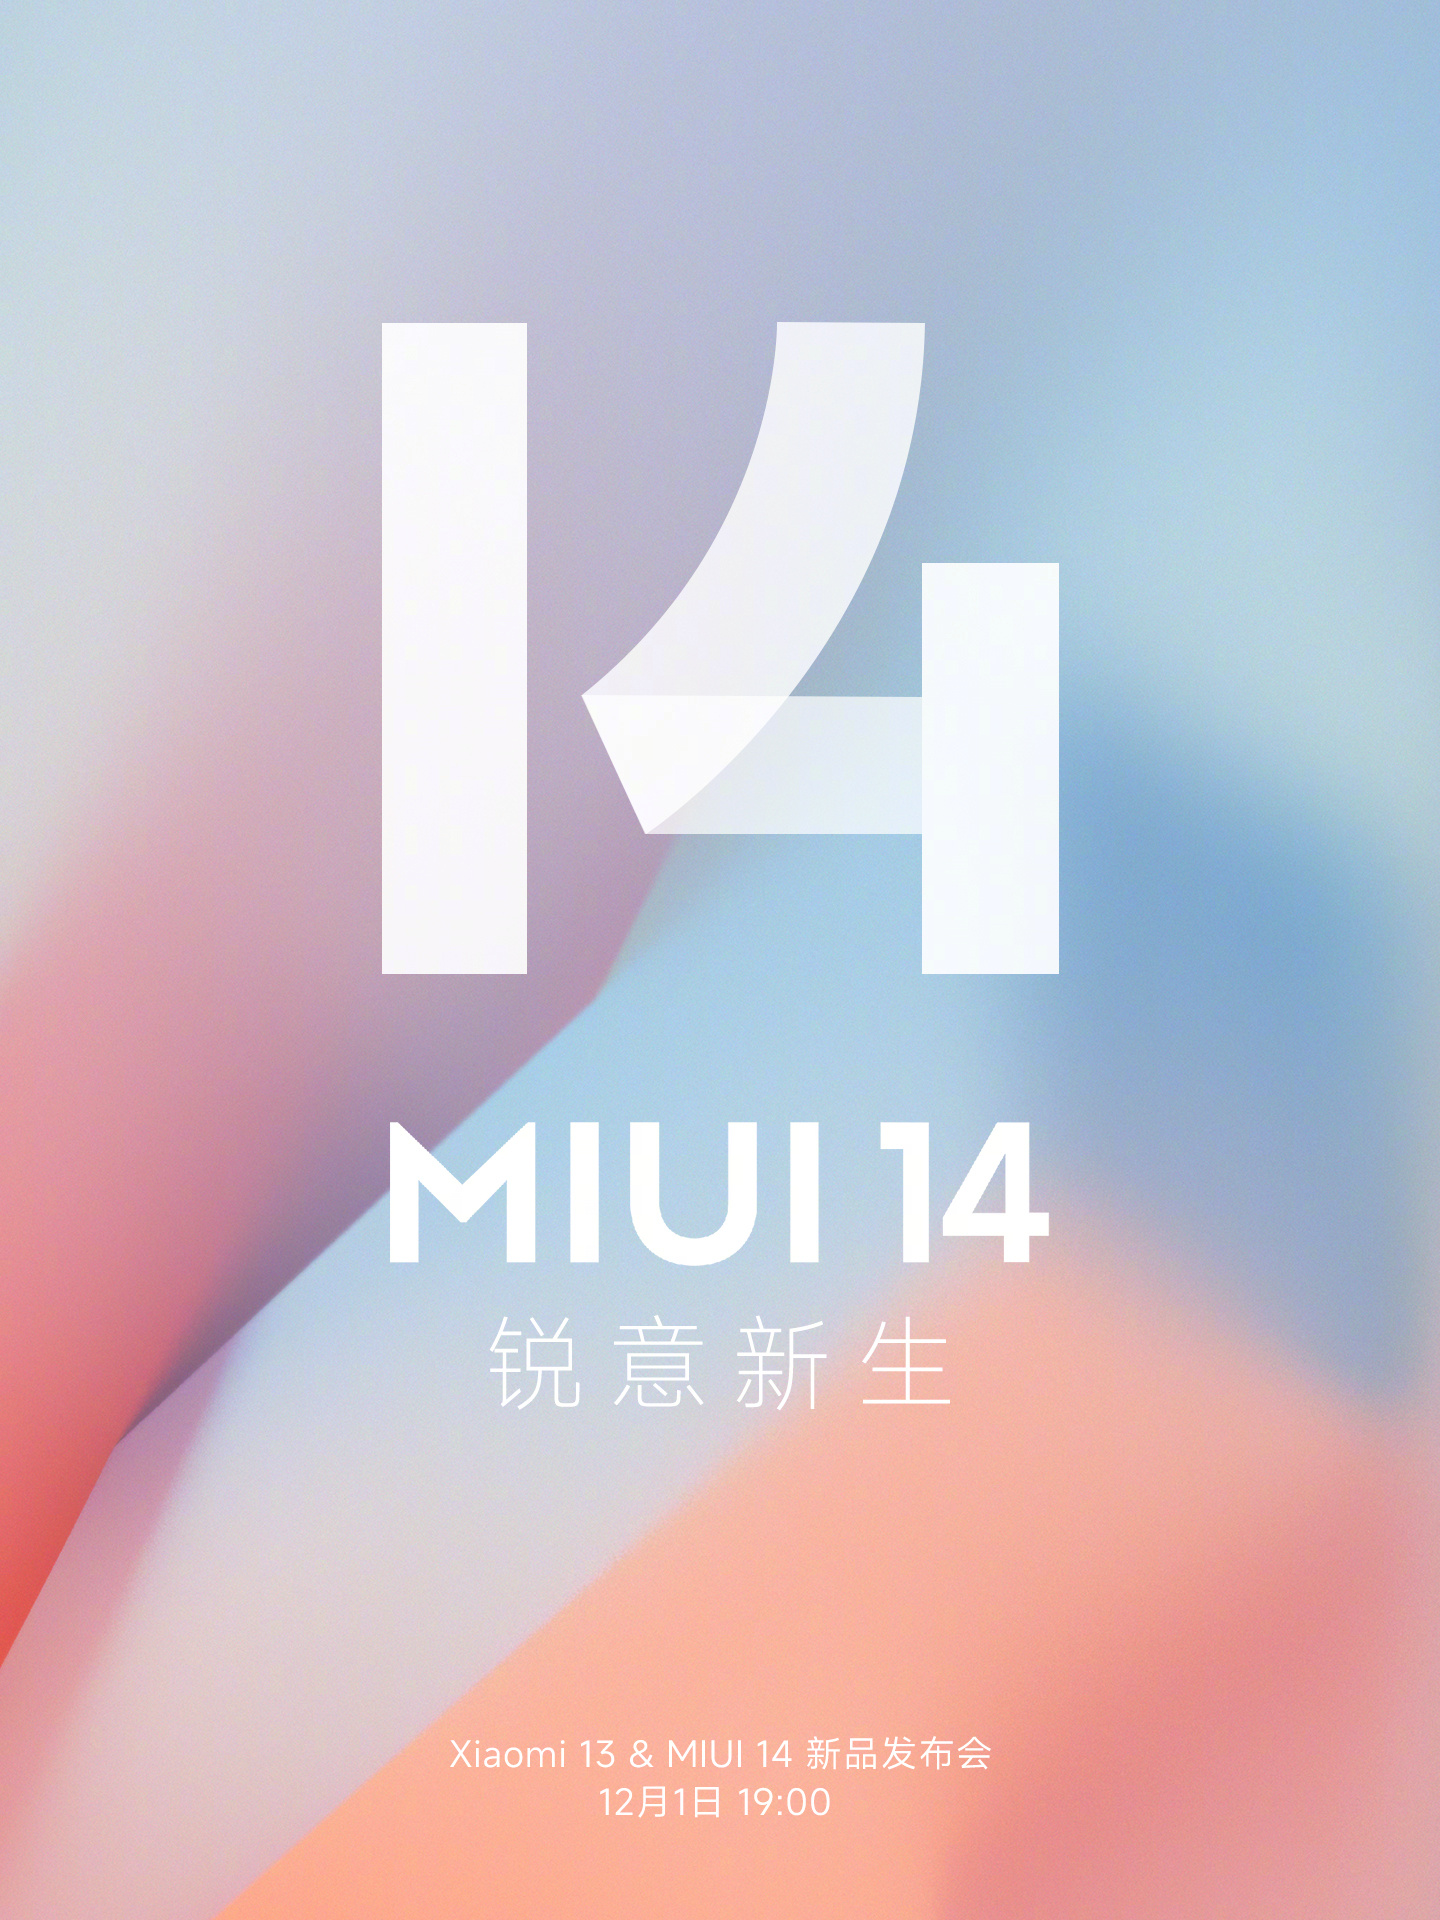 Новый xiaomi 14. Миуи 14. Xiaomi 14. Оболочка MIUI. Приложения из MIUI 14.